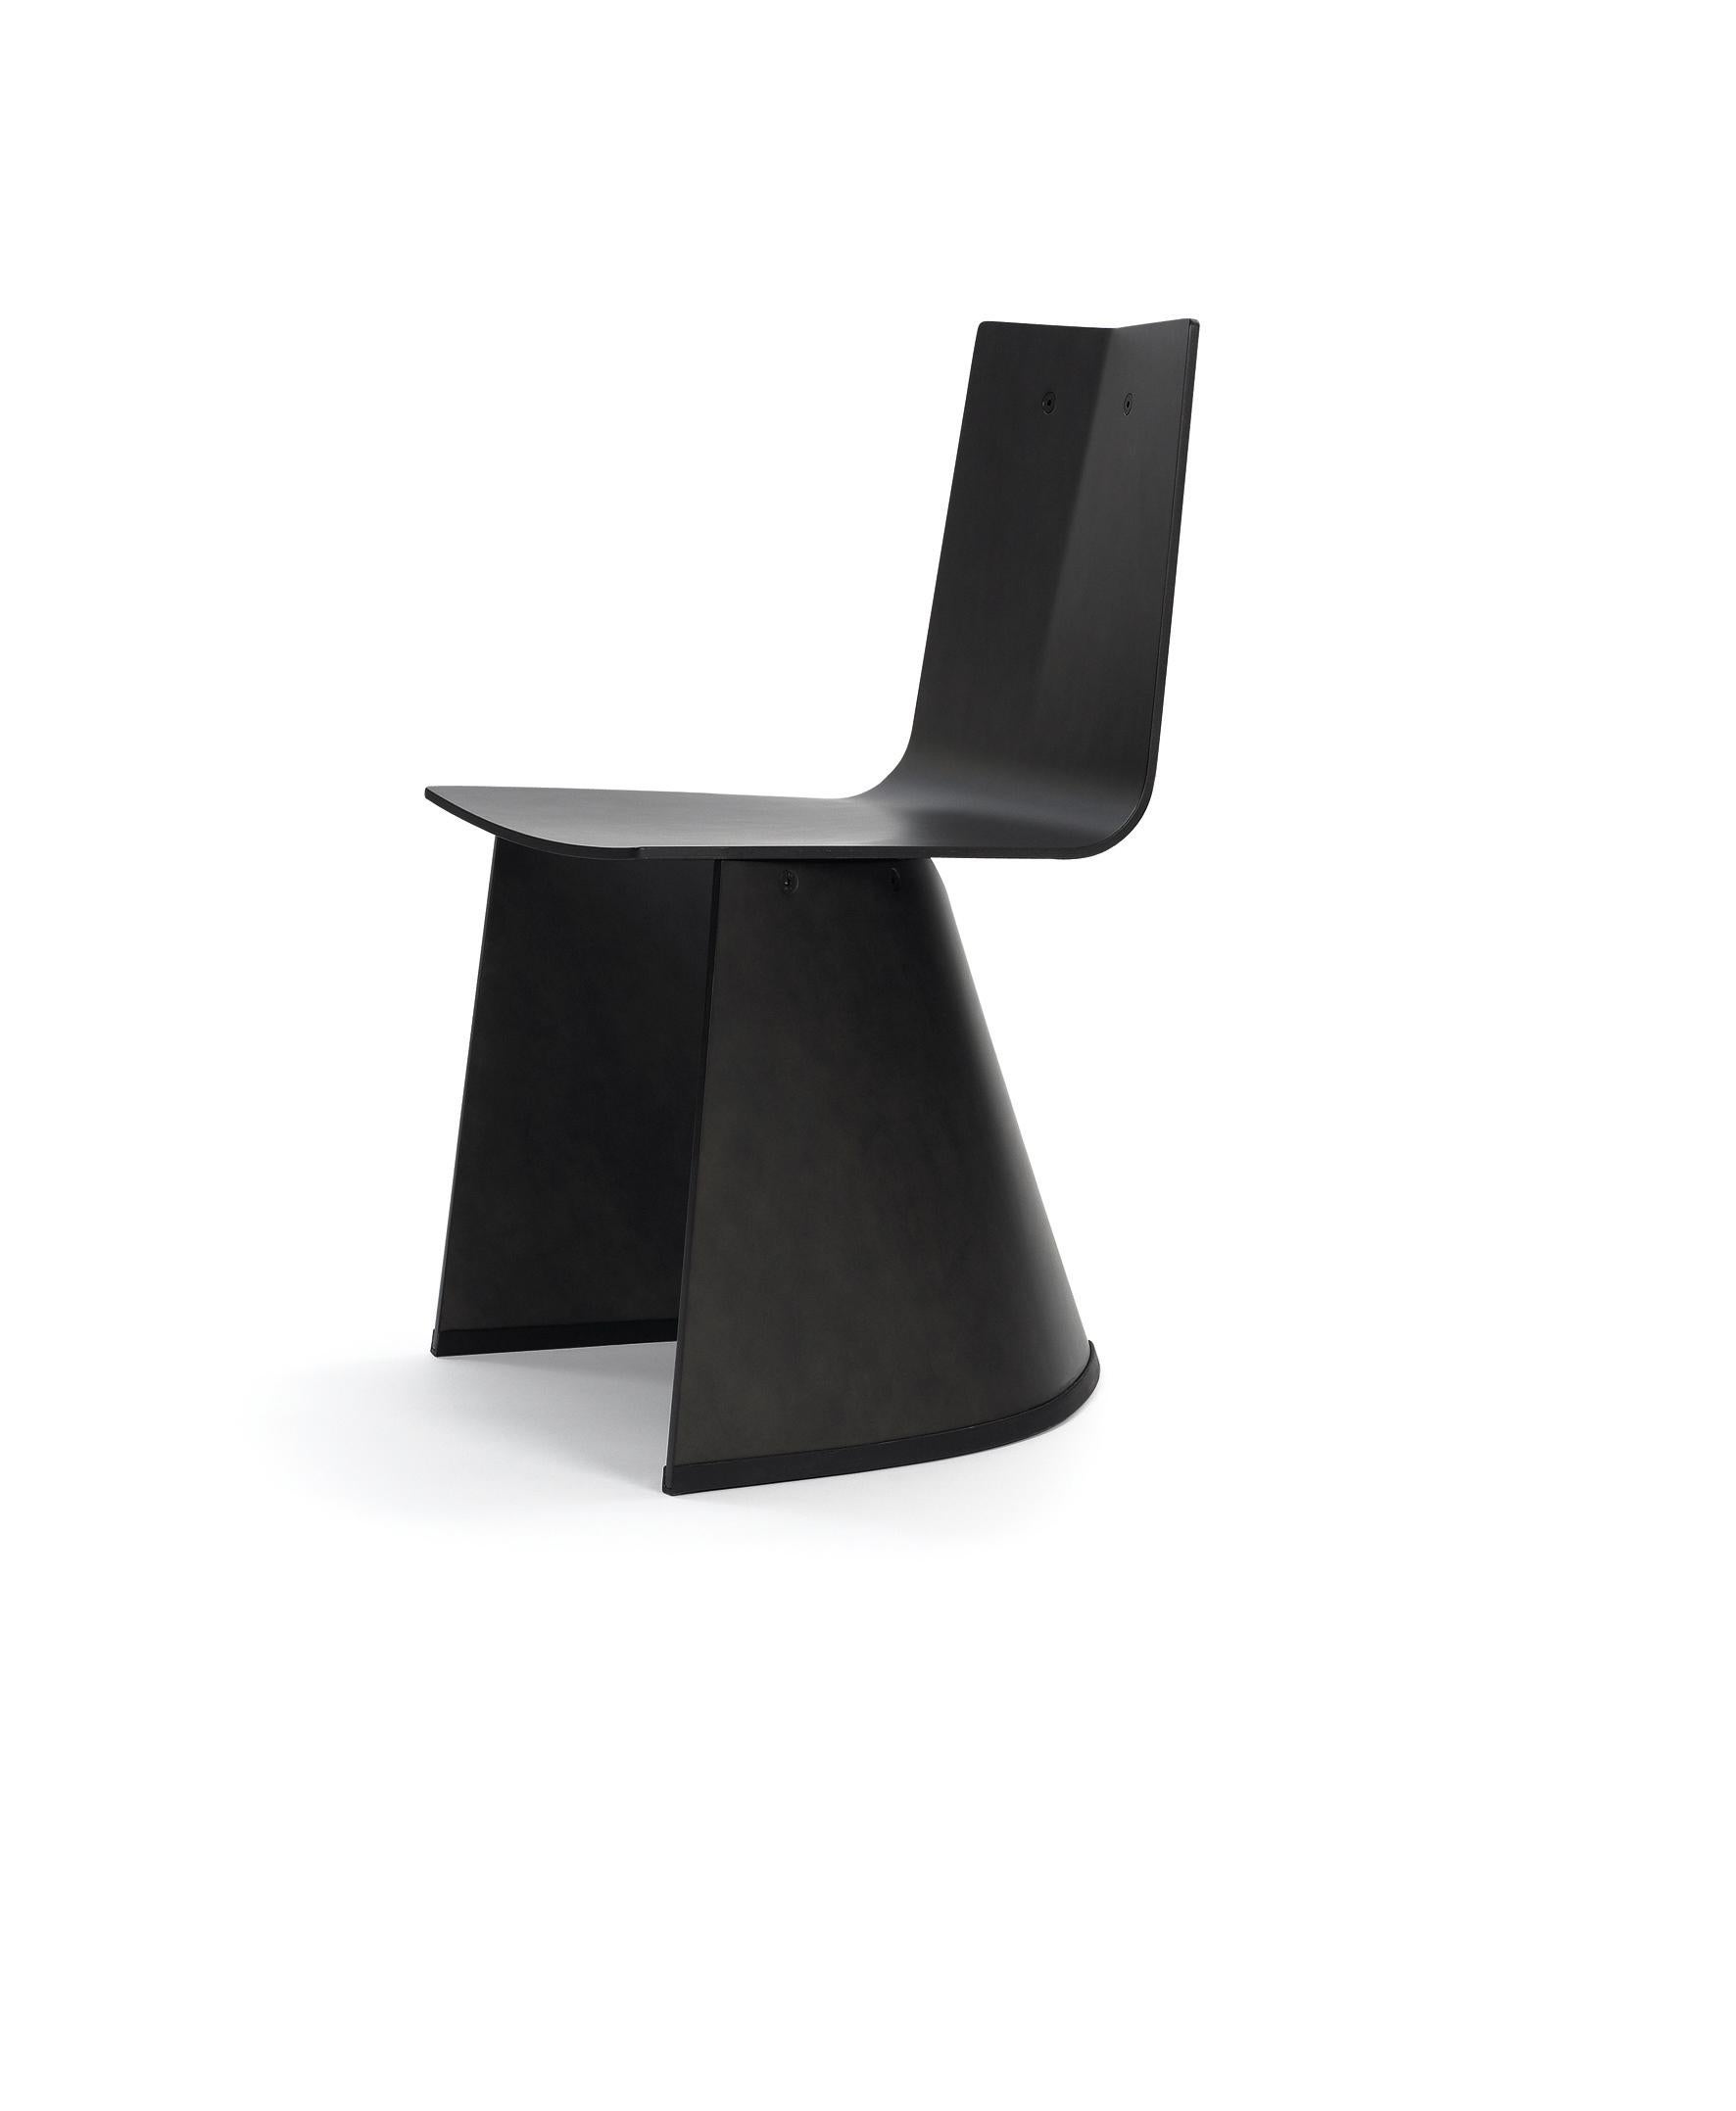 Für Konstantin Grcic war der Gedanke, die 1001. zahme Stuhlversion mit vier Beinen zu entwerfen, einfach zu langweilig. Stattdessen schuf er aus der intelligenten Kombination von zwei Holzschalen einen neuartigen Stuhl mit hoher skulpturaler